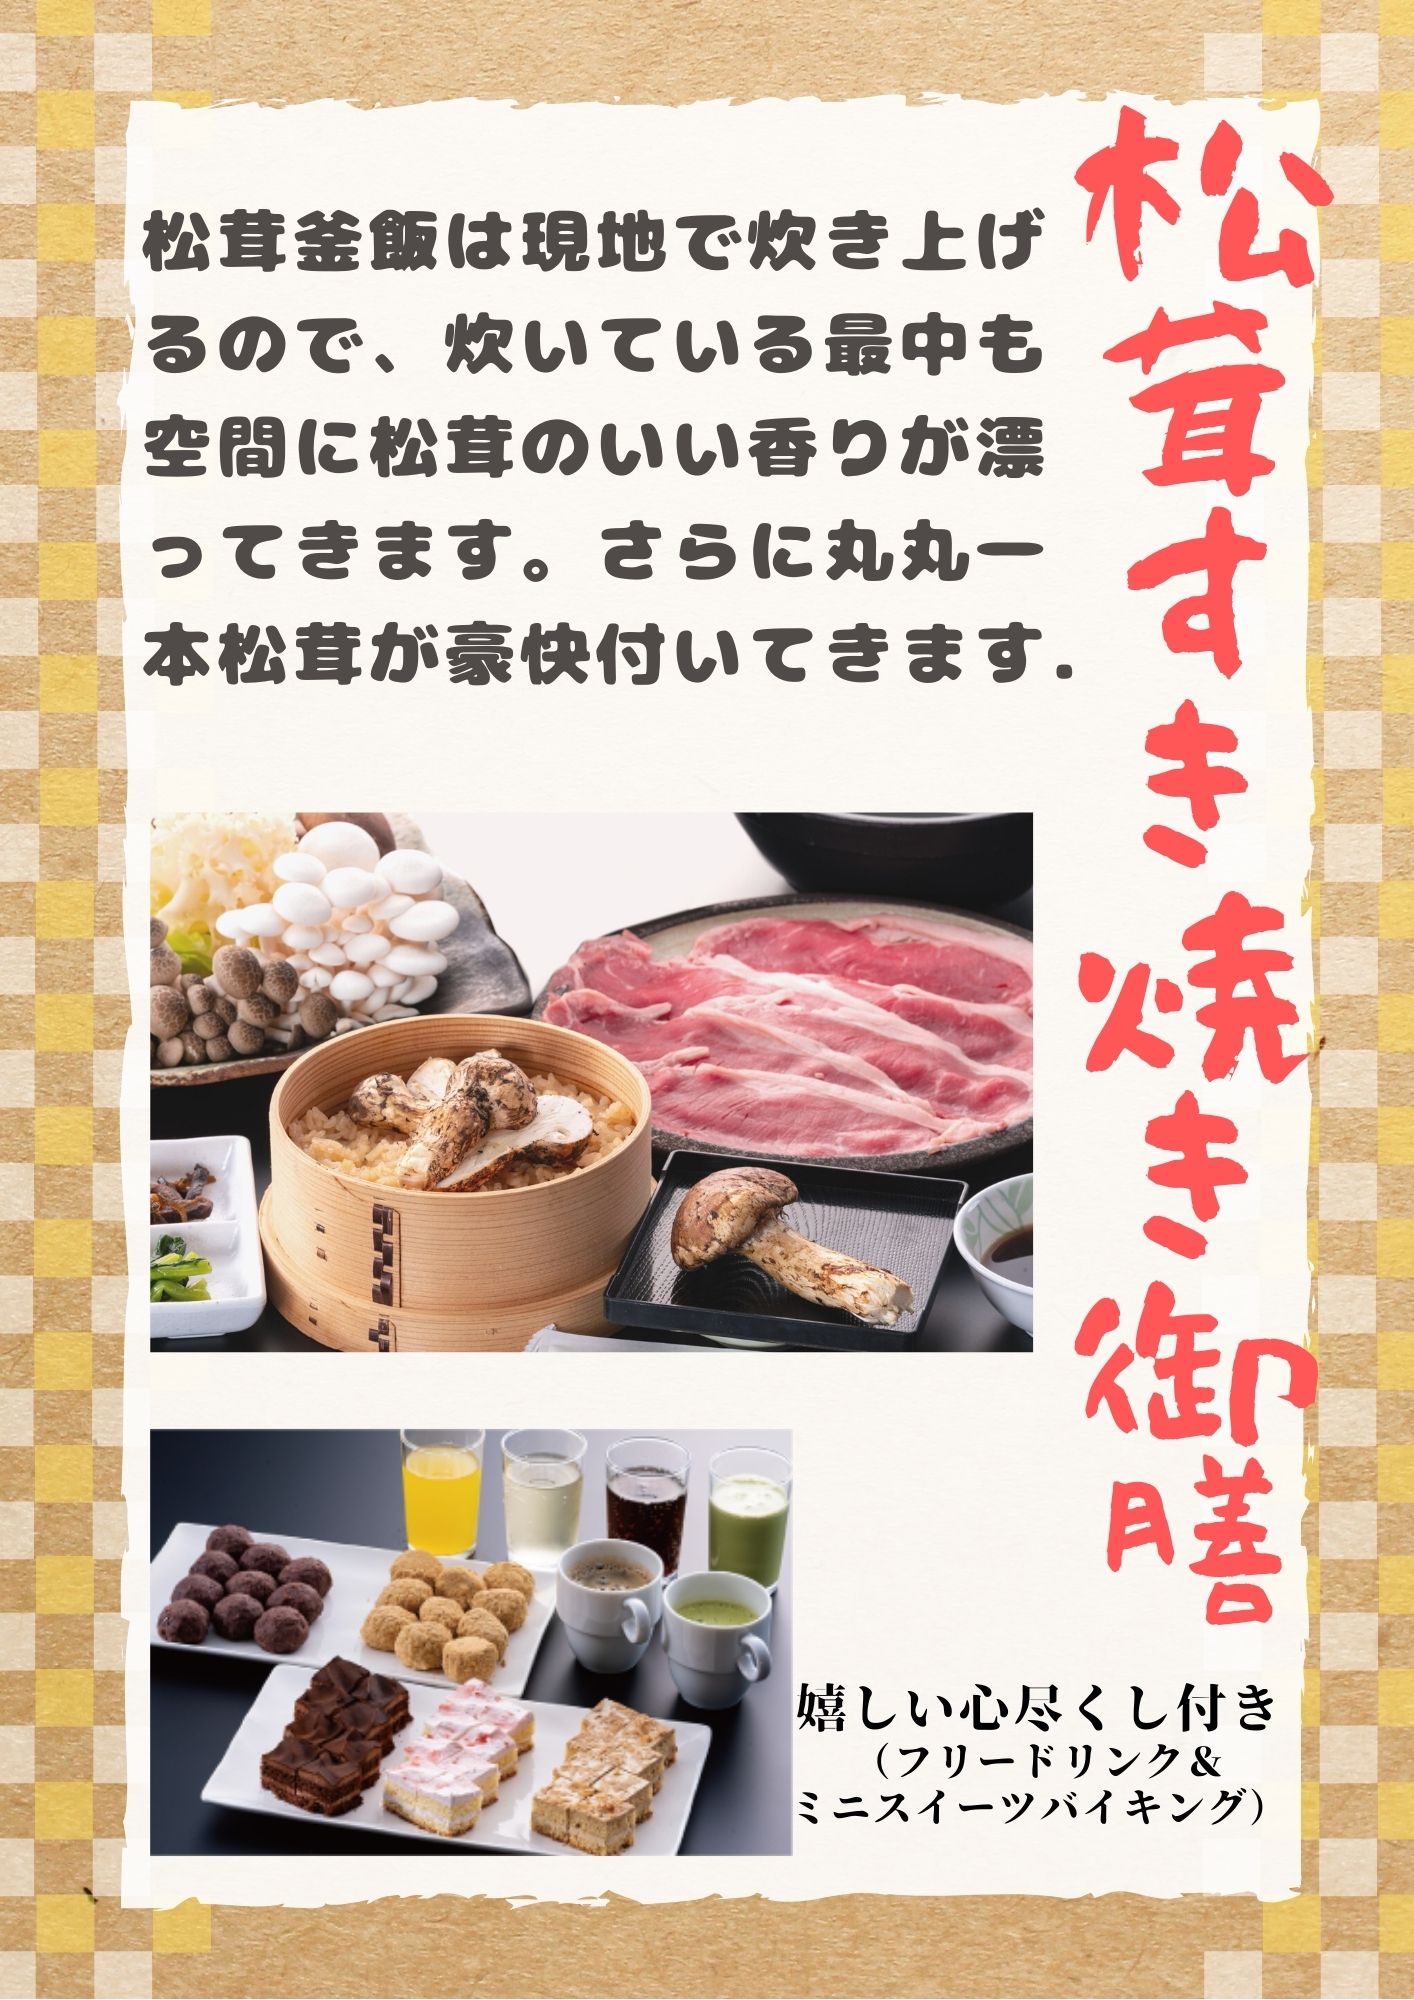 松茸とすき焼き御膳(イメージ)